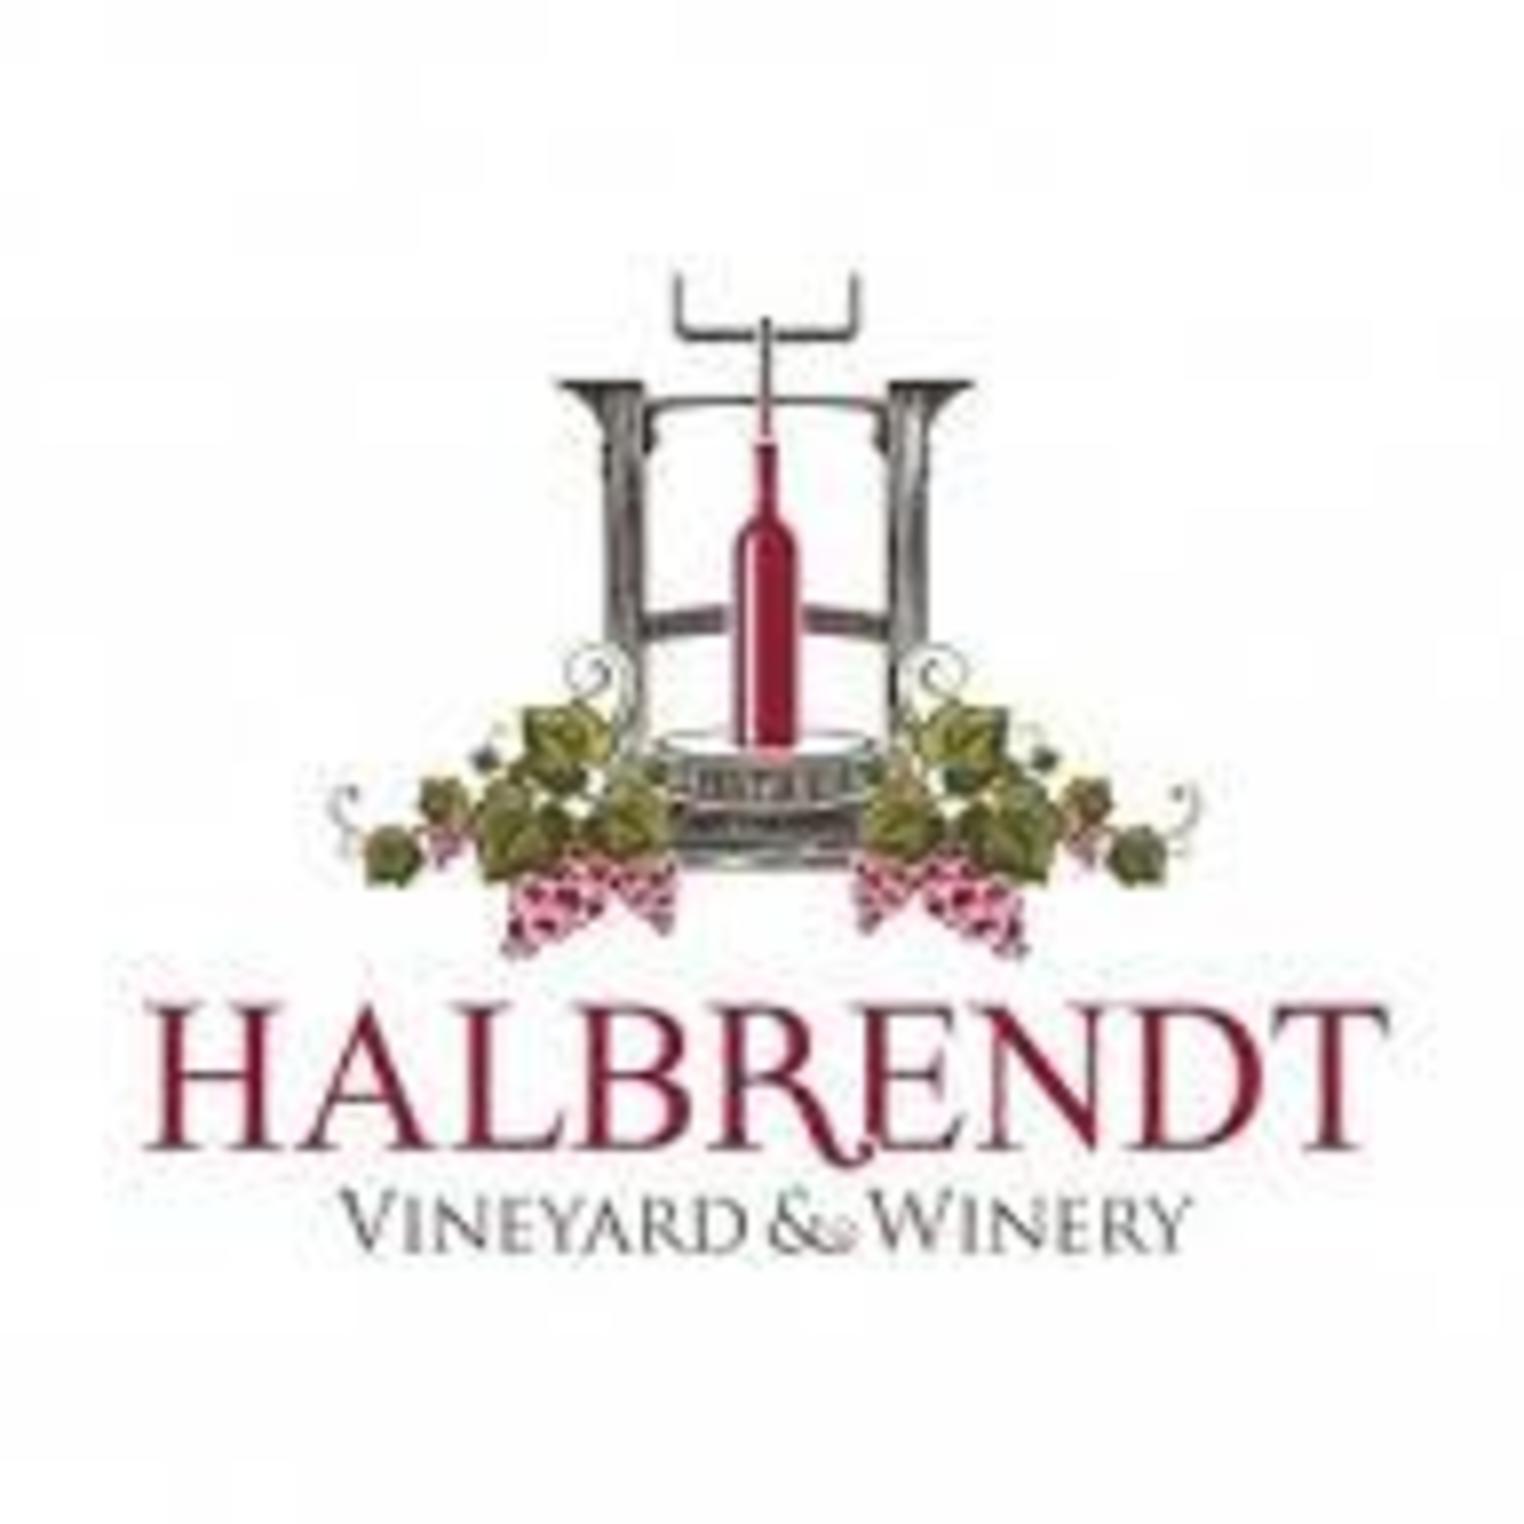 Halbrendy Vineyard & Winery